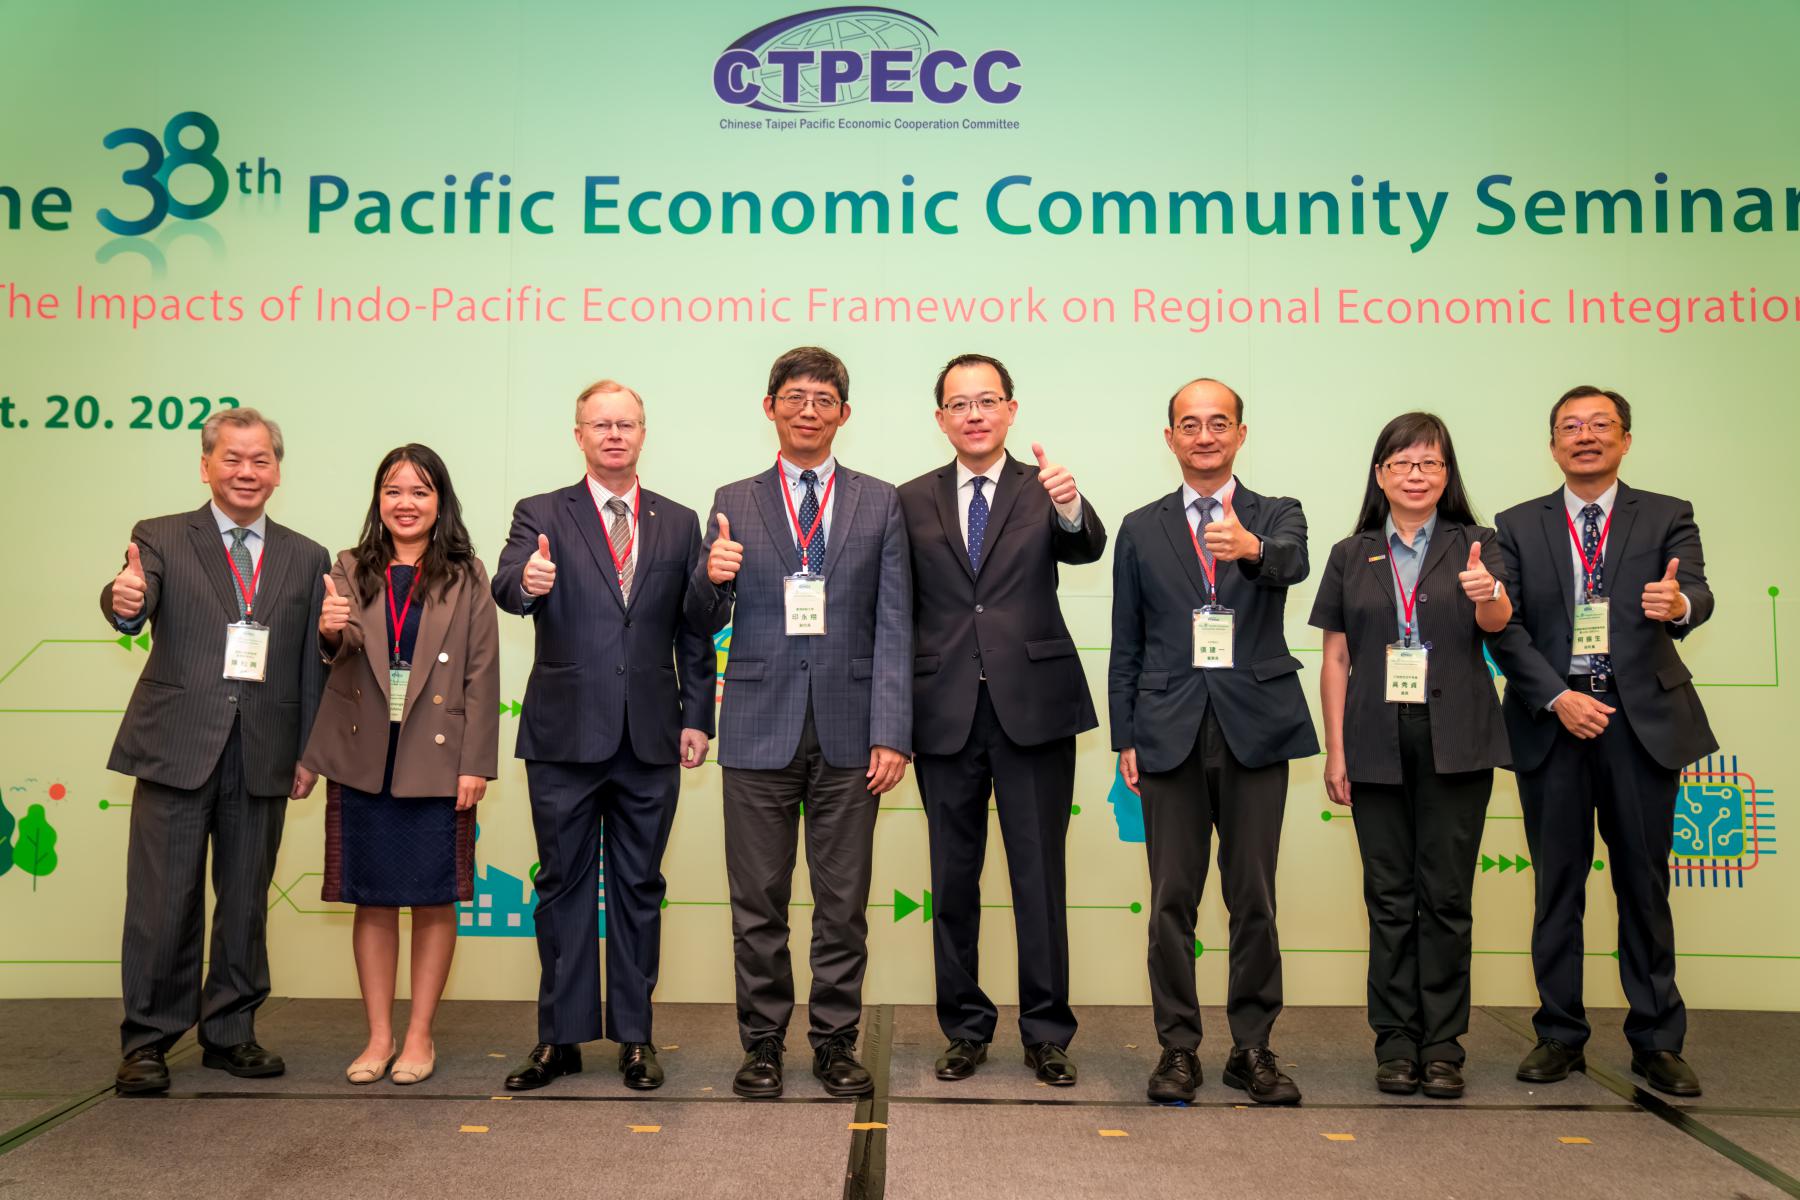 【Event】The 38th Pacific Economic Community Seminar